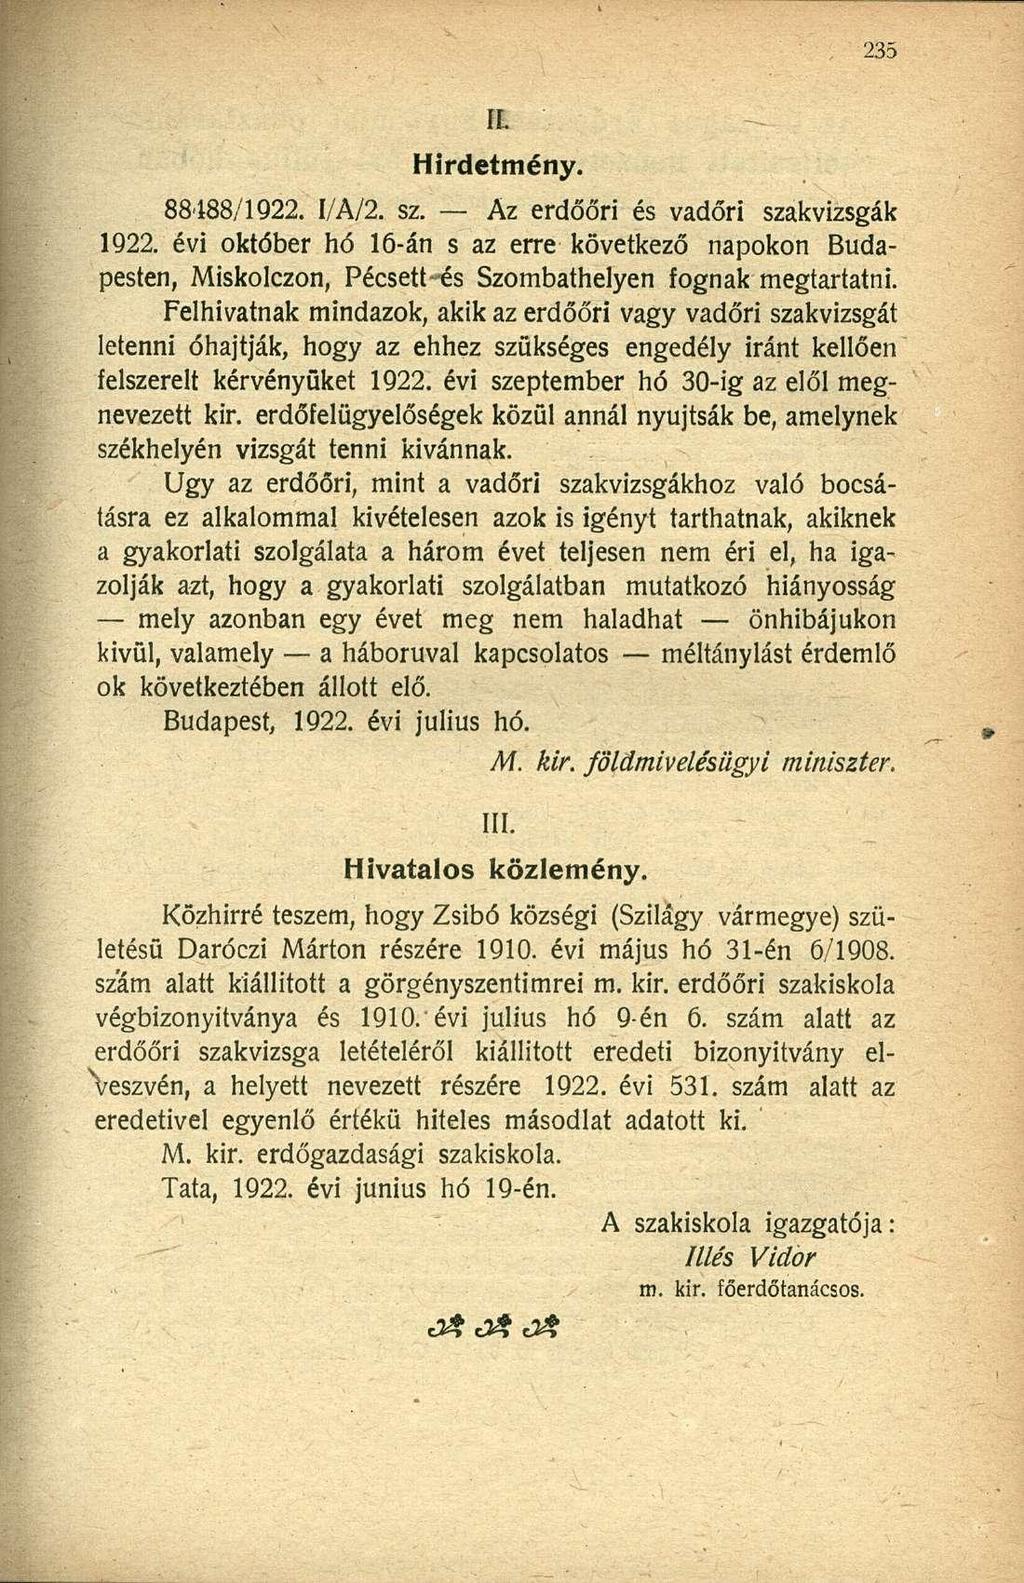 IL Hirdetmény. 88488/1922. I/A/2. sz. Az erdőőri és vadőri szakvizsgák 1922. évi október hó 16-án s az erre következő napokon Budapesten, Miskolczon, Pécsett és Szombathelyen fognak megtartatni.